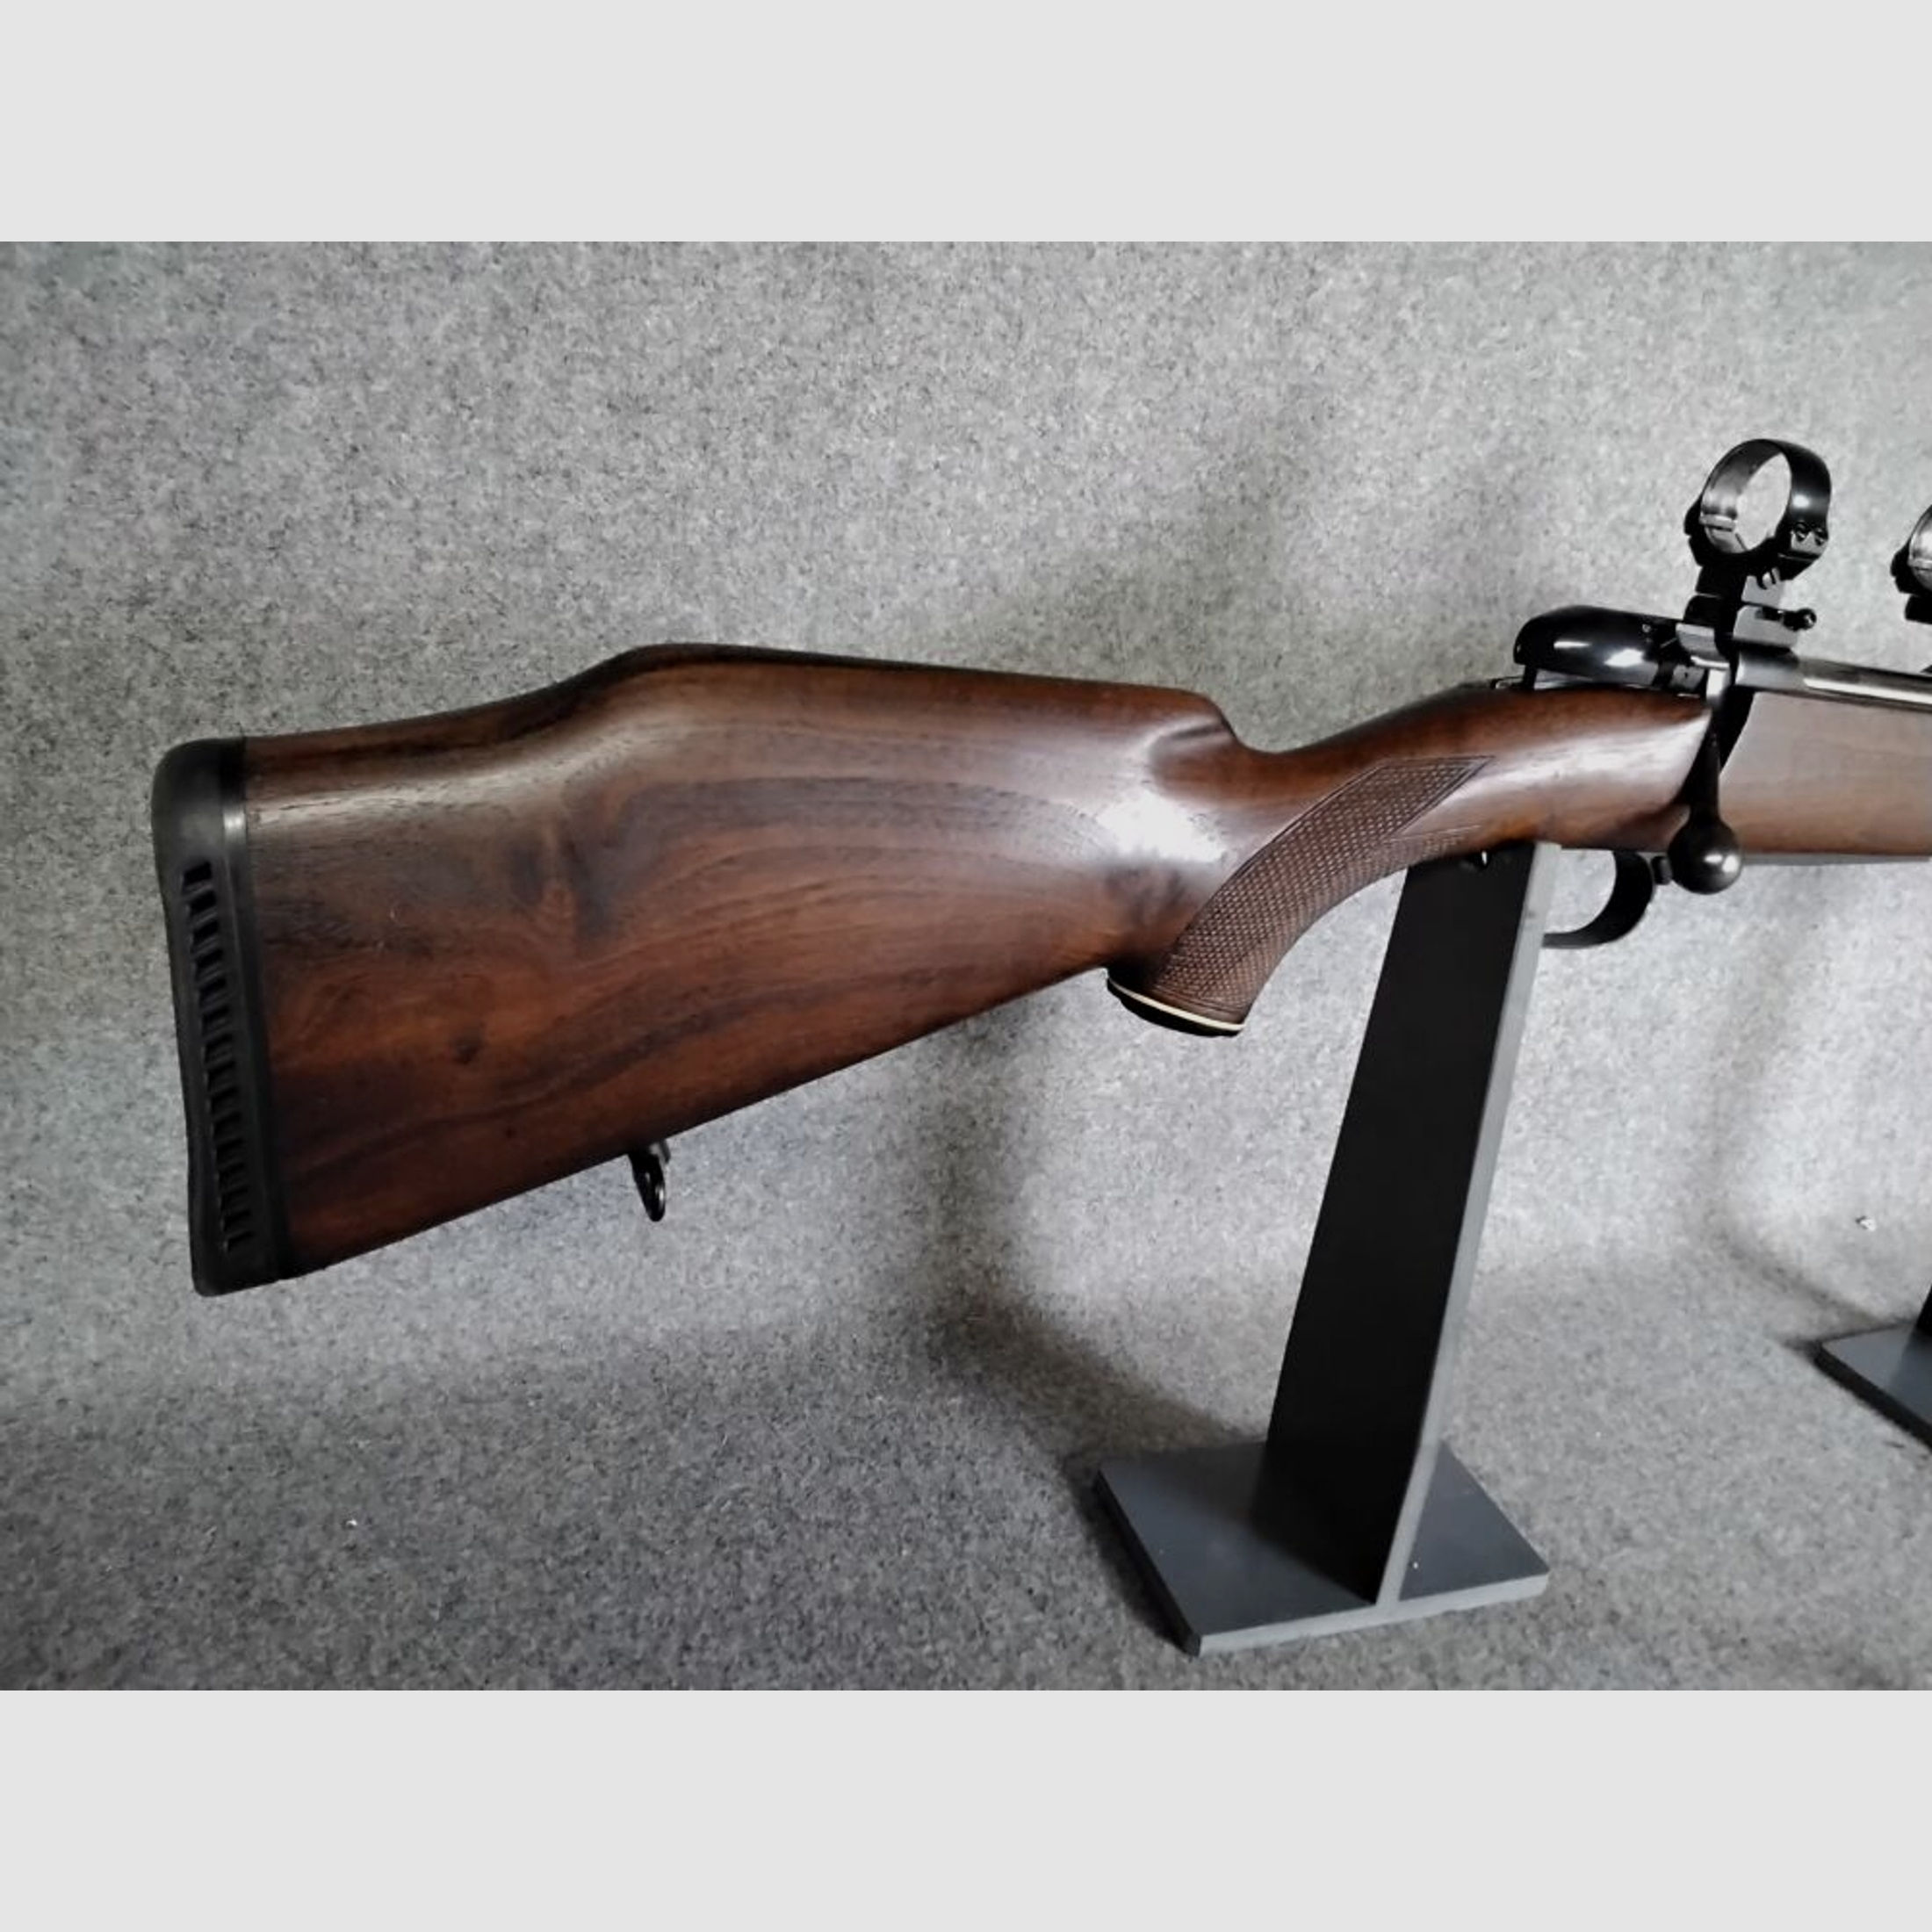 Mauser	 Mod. 2000